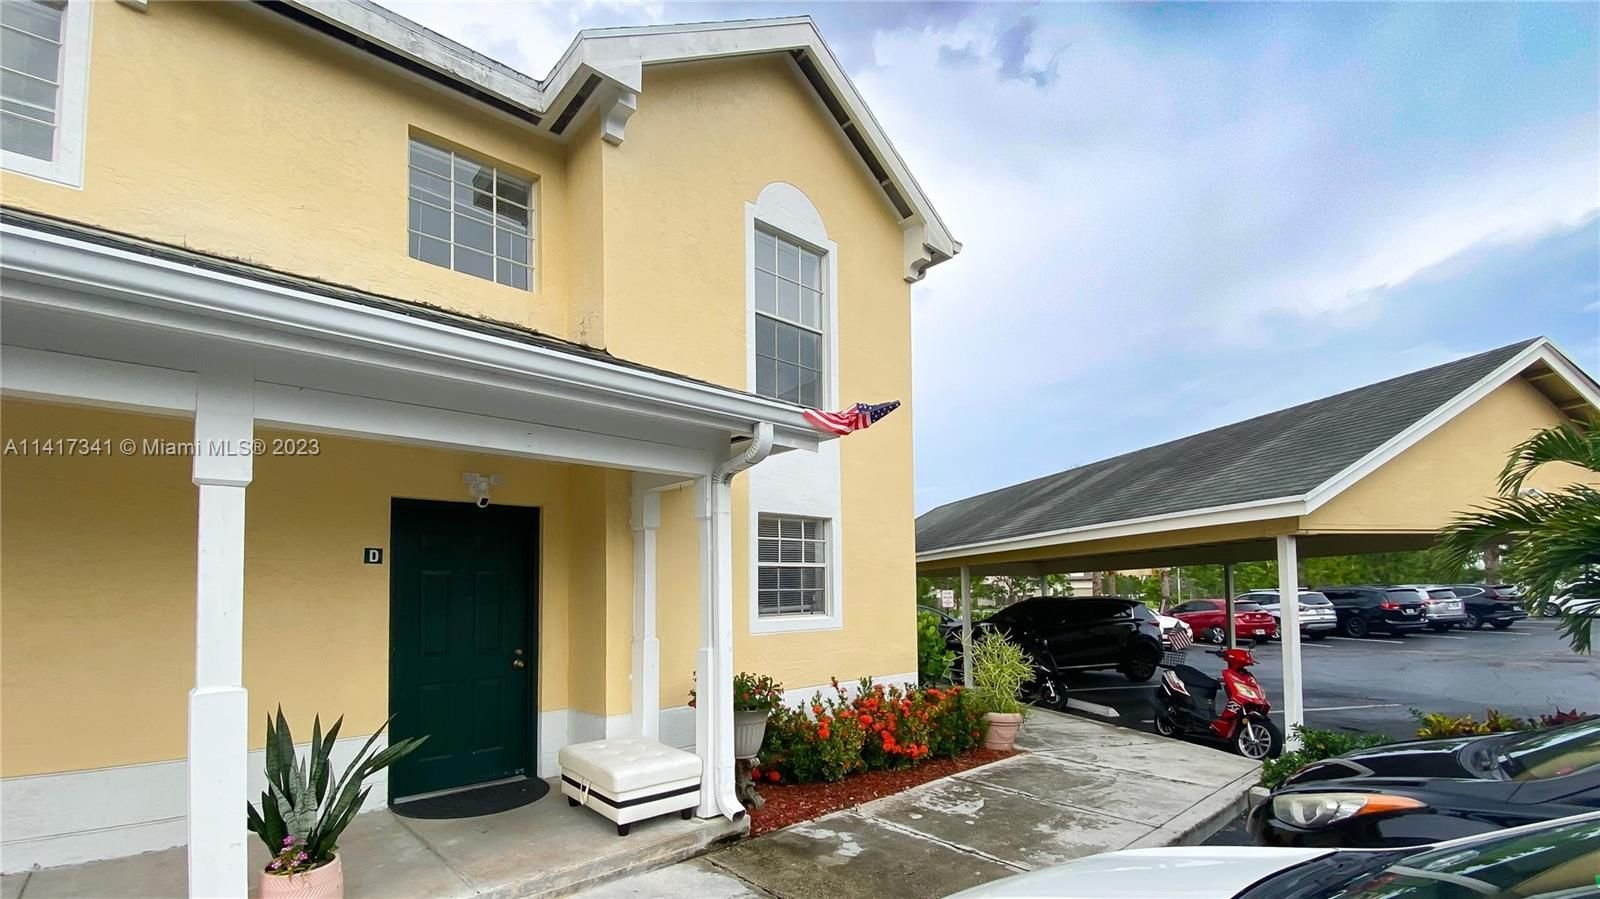 Real estate property located at 6308 La Costa Dr D, Palm Beach County, ADDISON POINTE AT BOCA RA, Boca Raton, FL